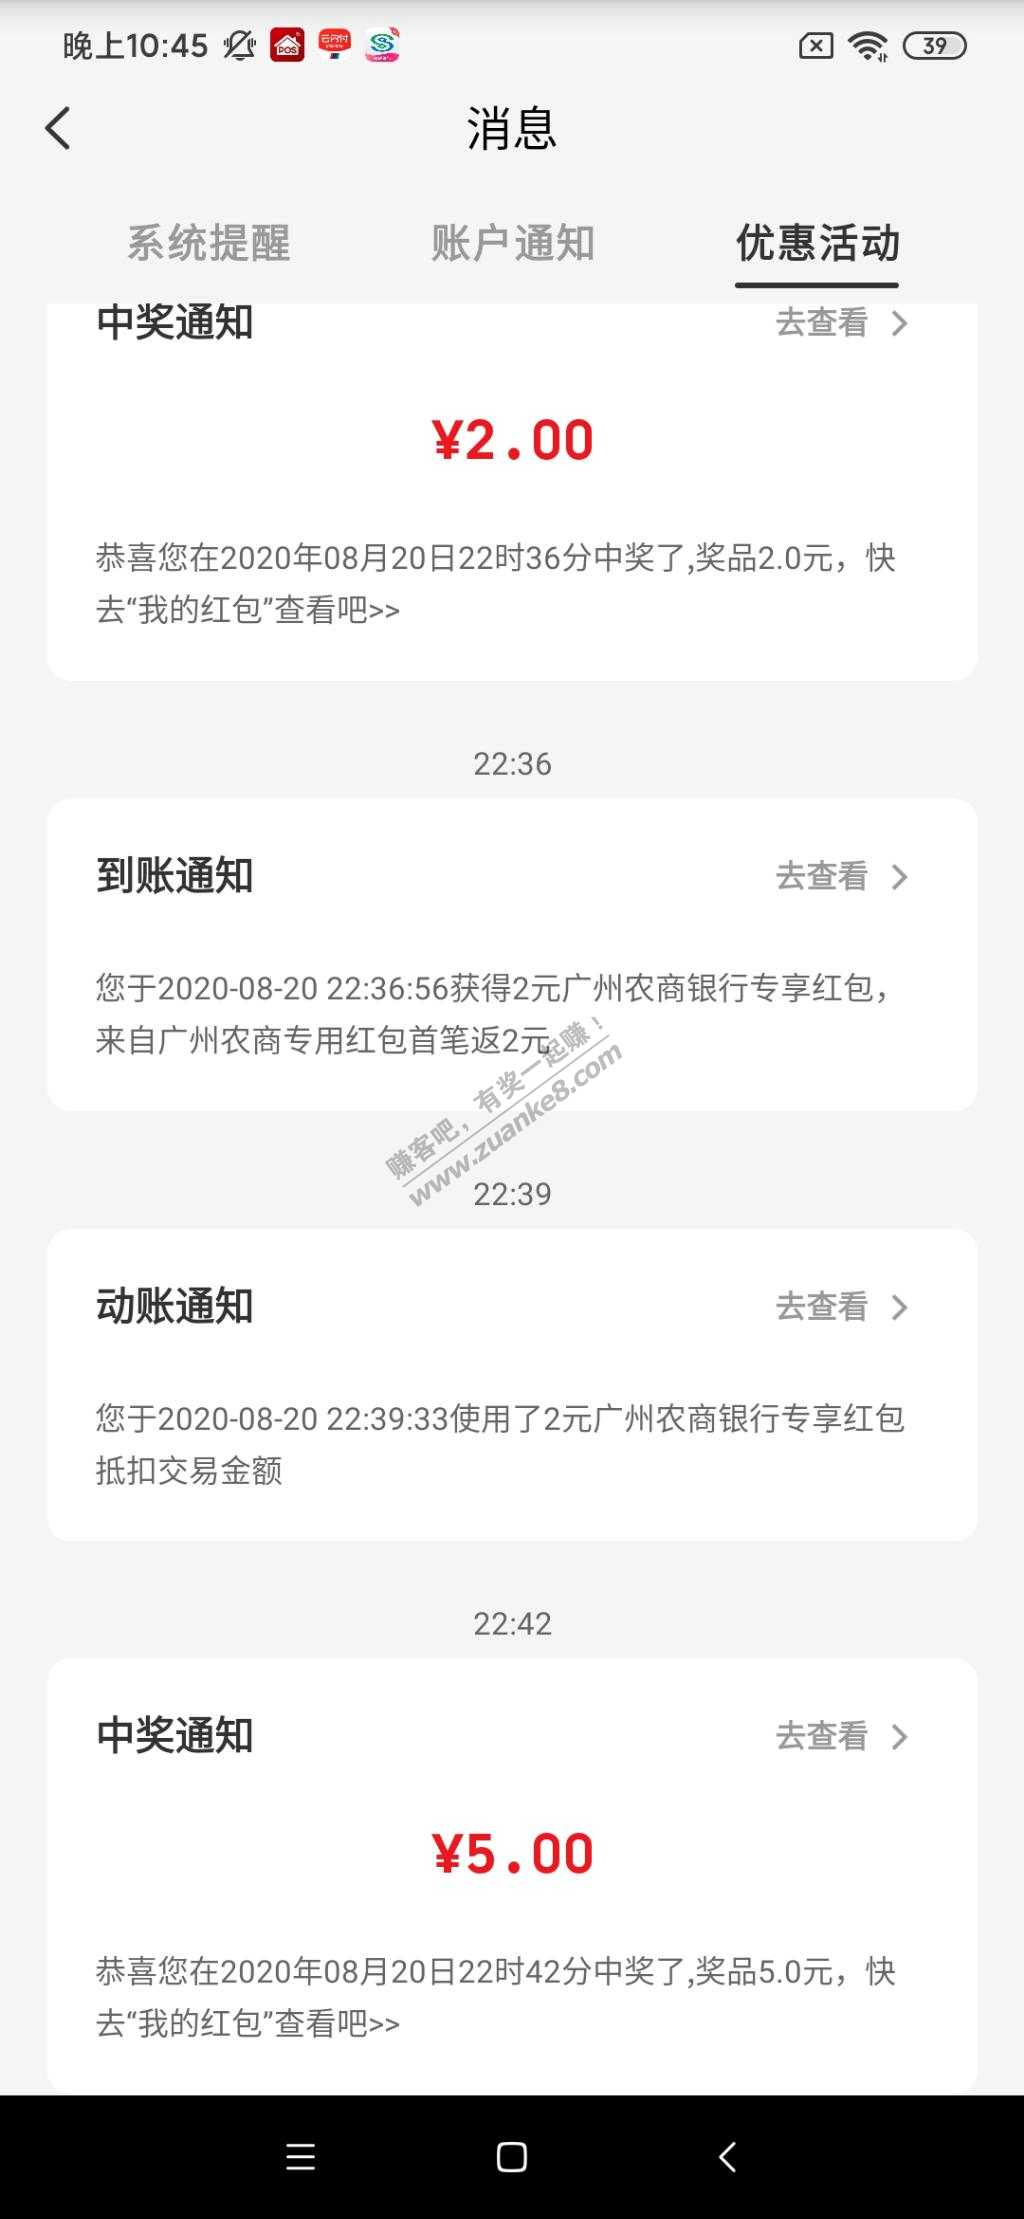 下载珠江直销银行app开卡绑定云闪付买12元毛-惠小助(52huixz.com)